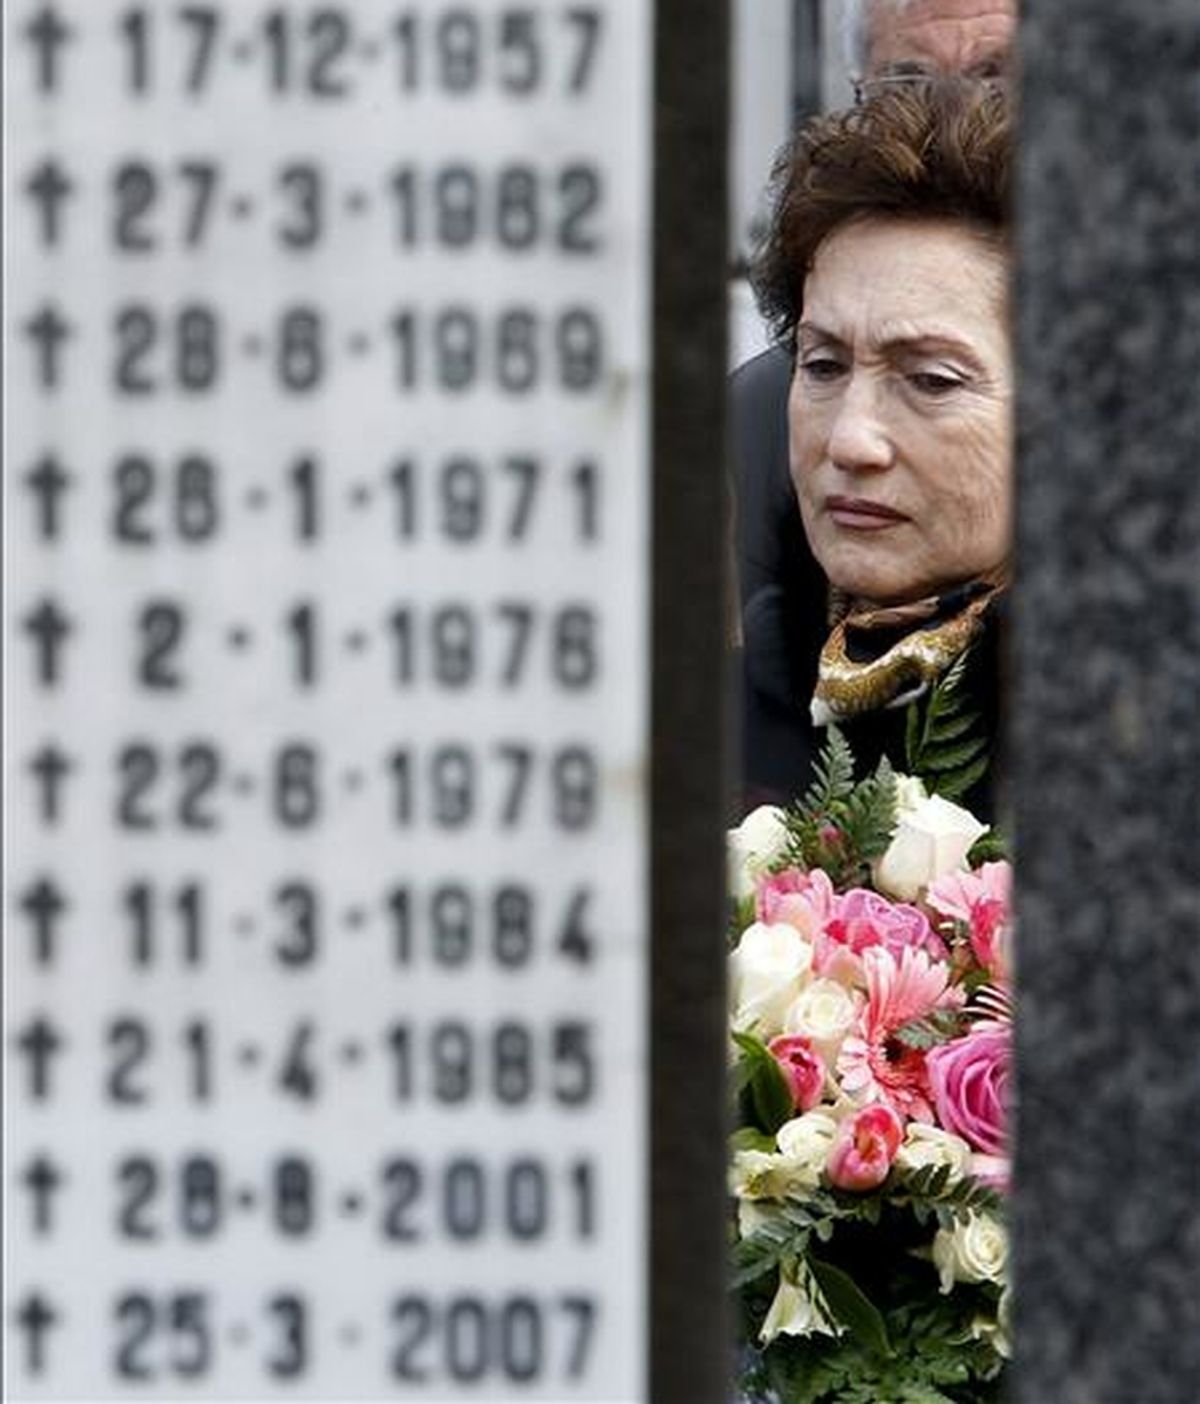 La viuda del abogado y dirigente socialista asesinado por ETA Fernando Múgica, Mapi Lasheras, asiste al homenaje a su marido celebrado en el cementerio de Polloe por el PSE-EE de Guipúzcoa, en el decimotercer aniversario del crimen. EFE